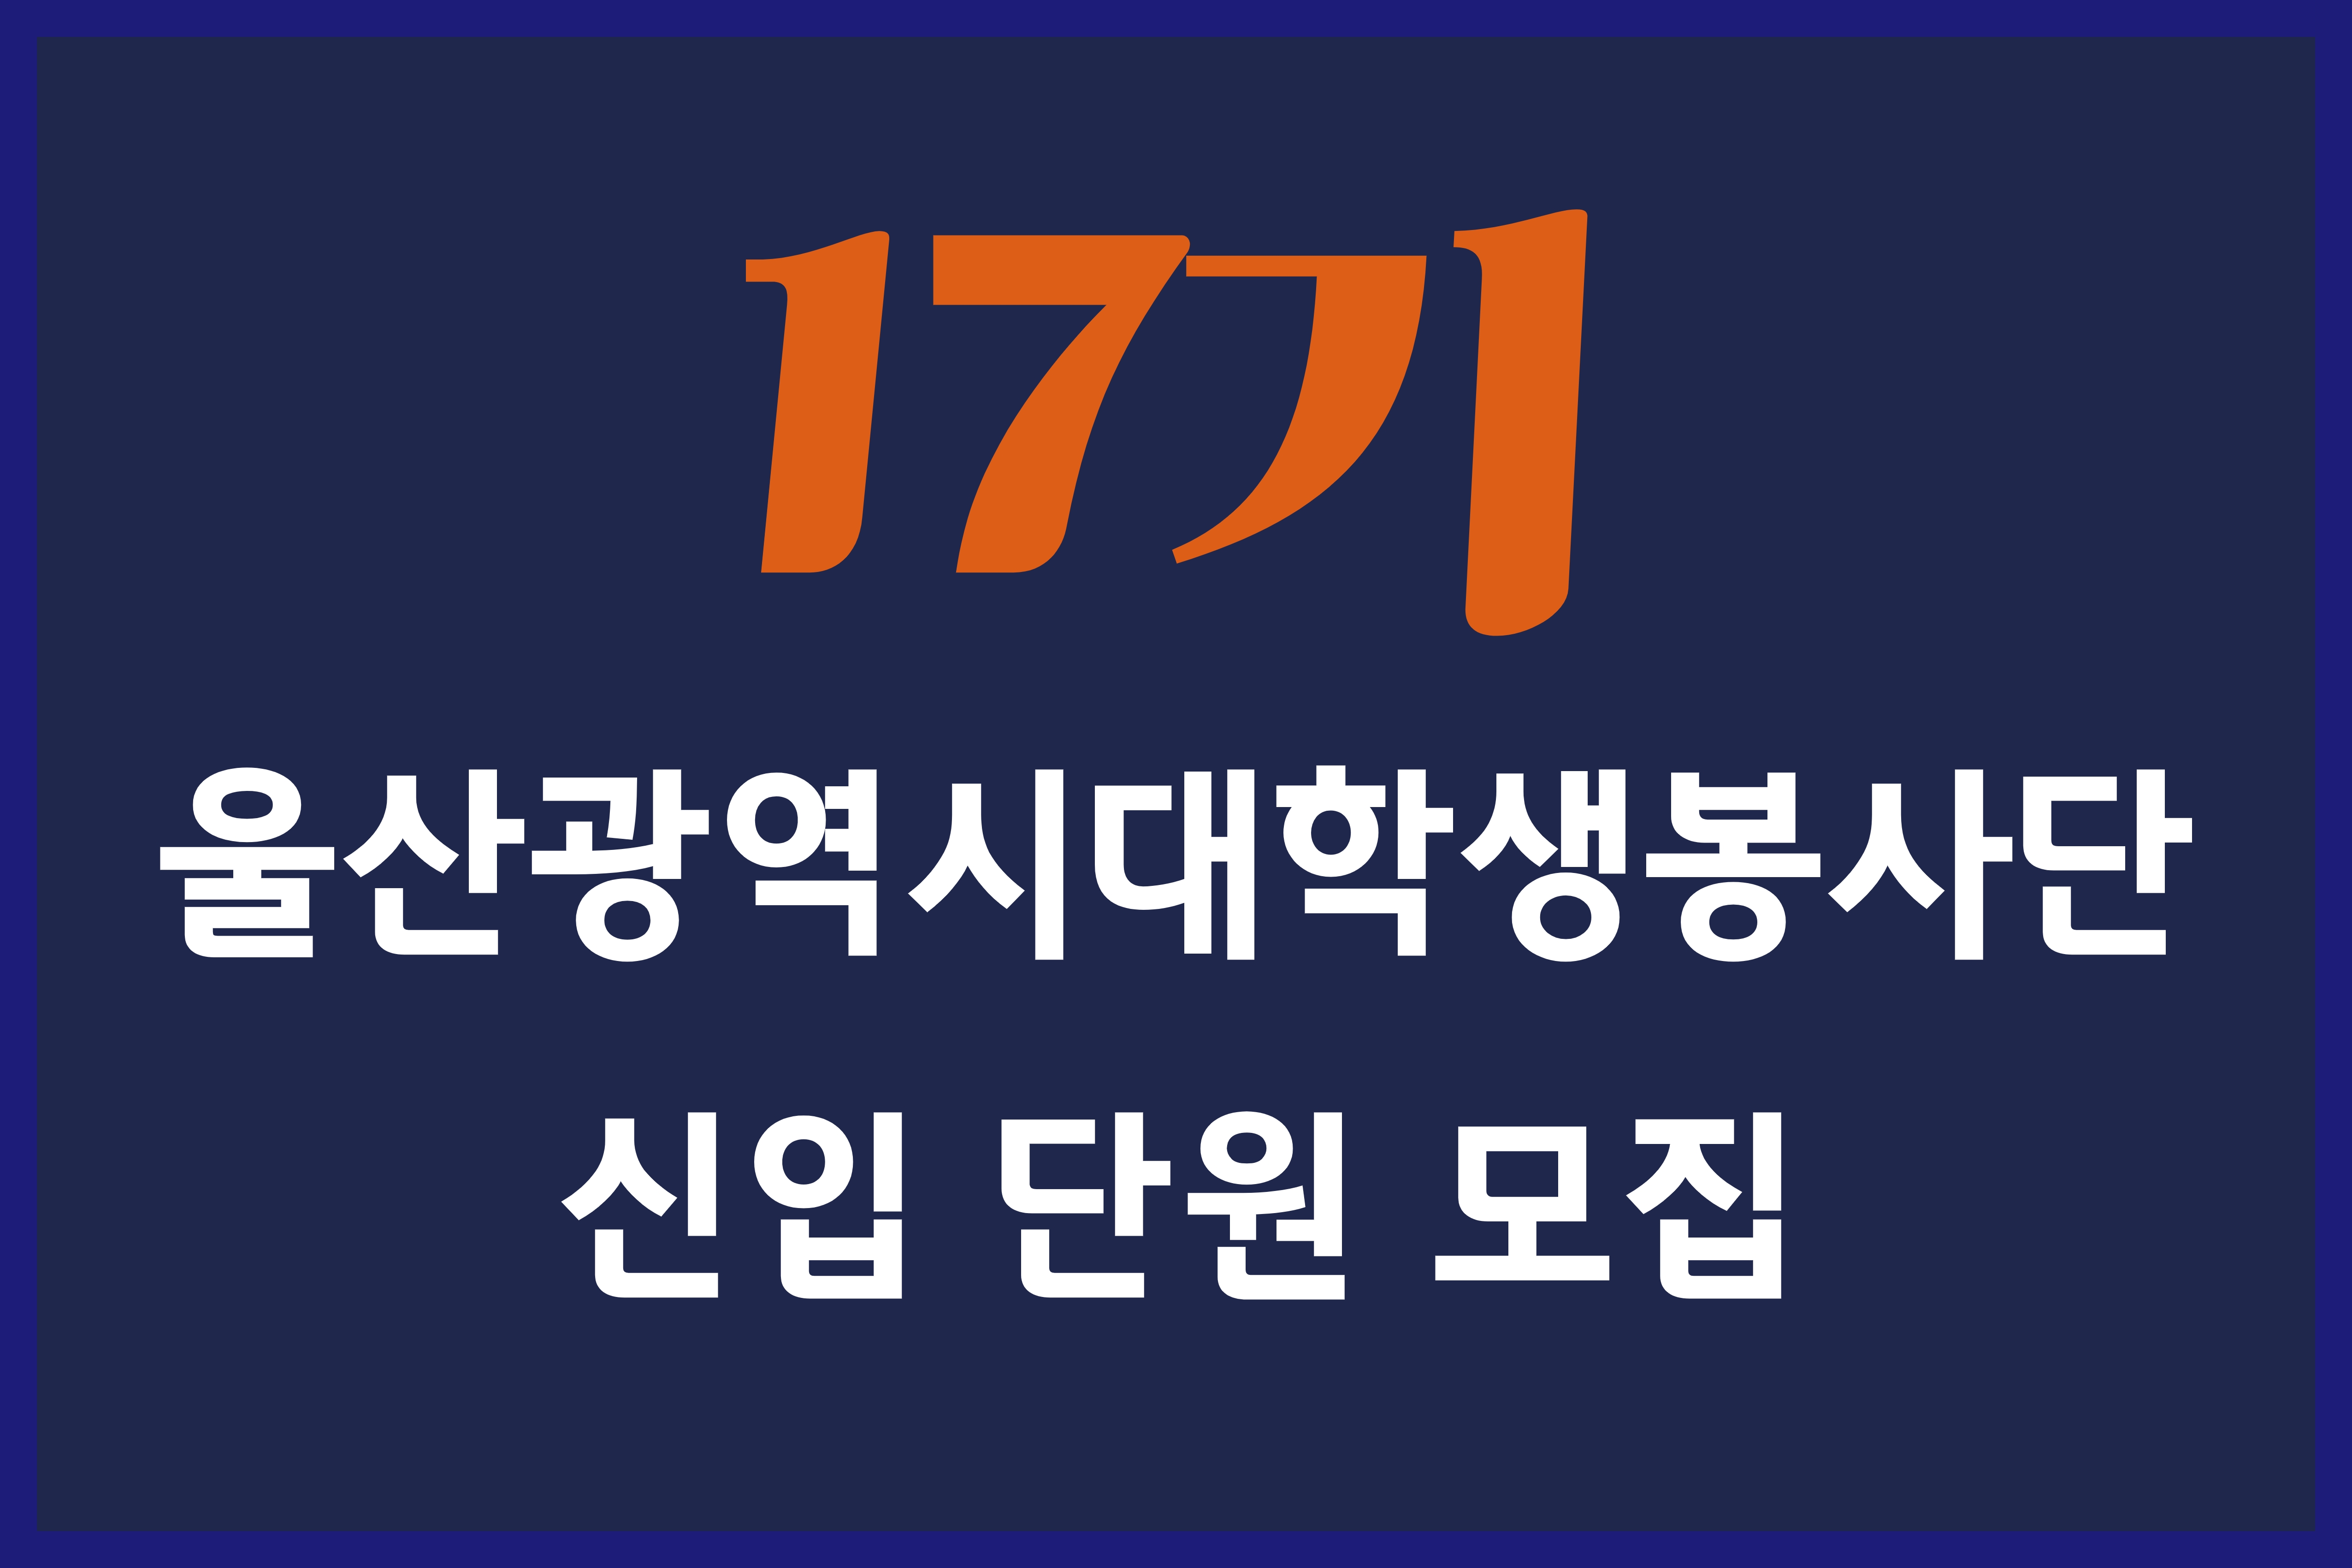 17기 울산광역시대학생봉사단 신입 단원 모집